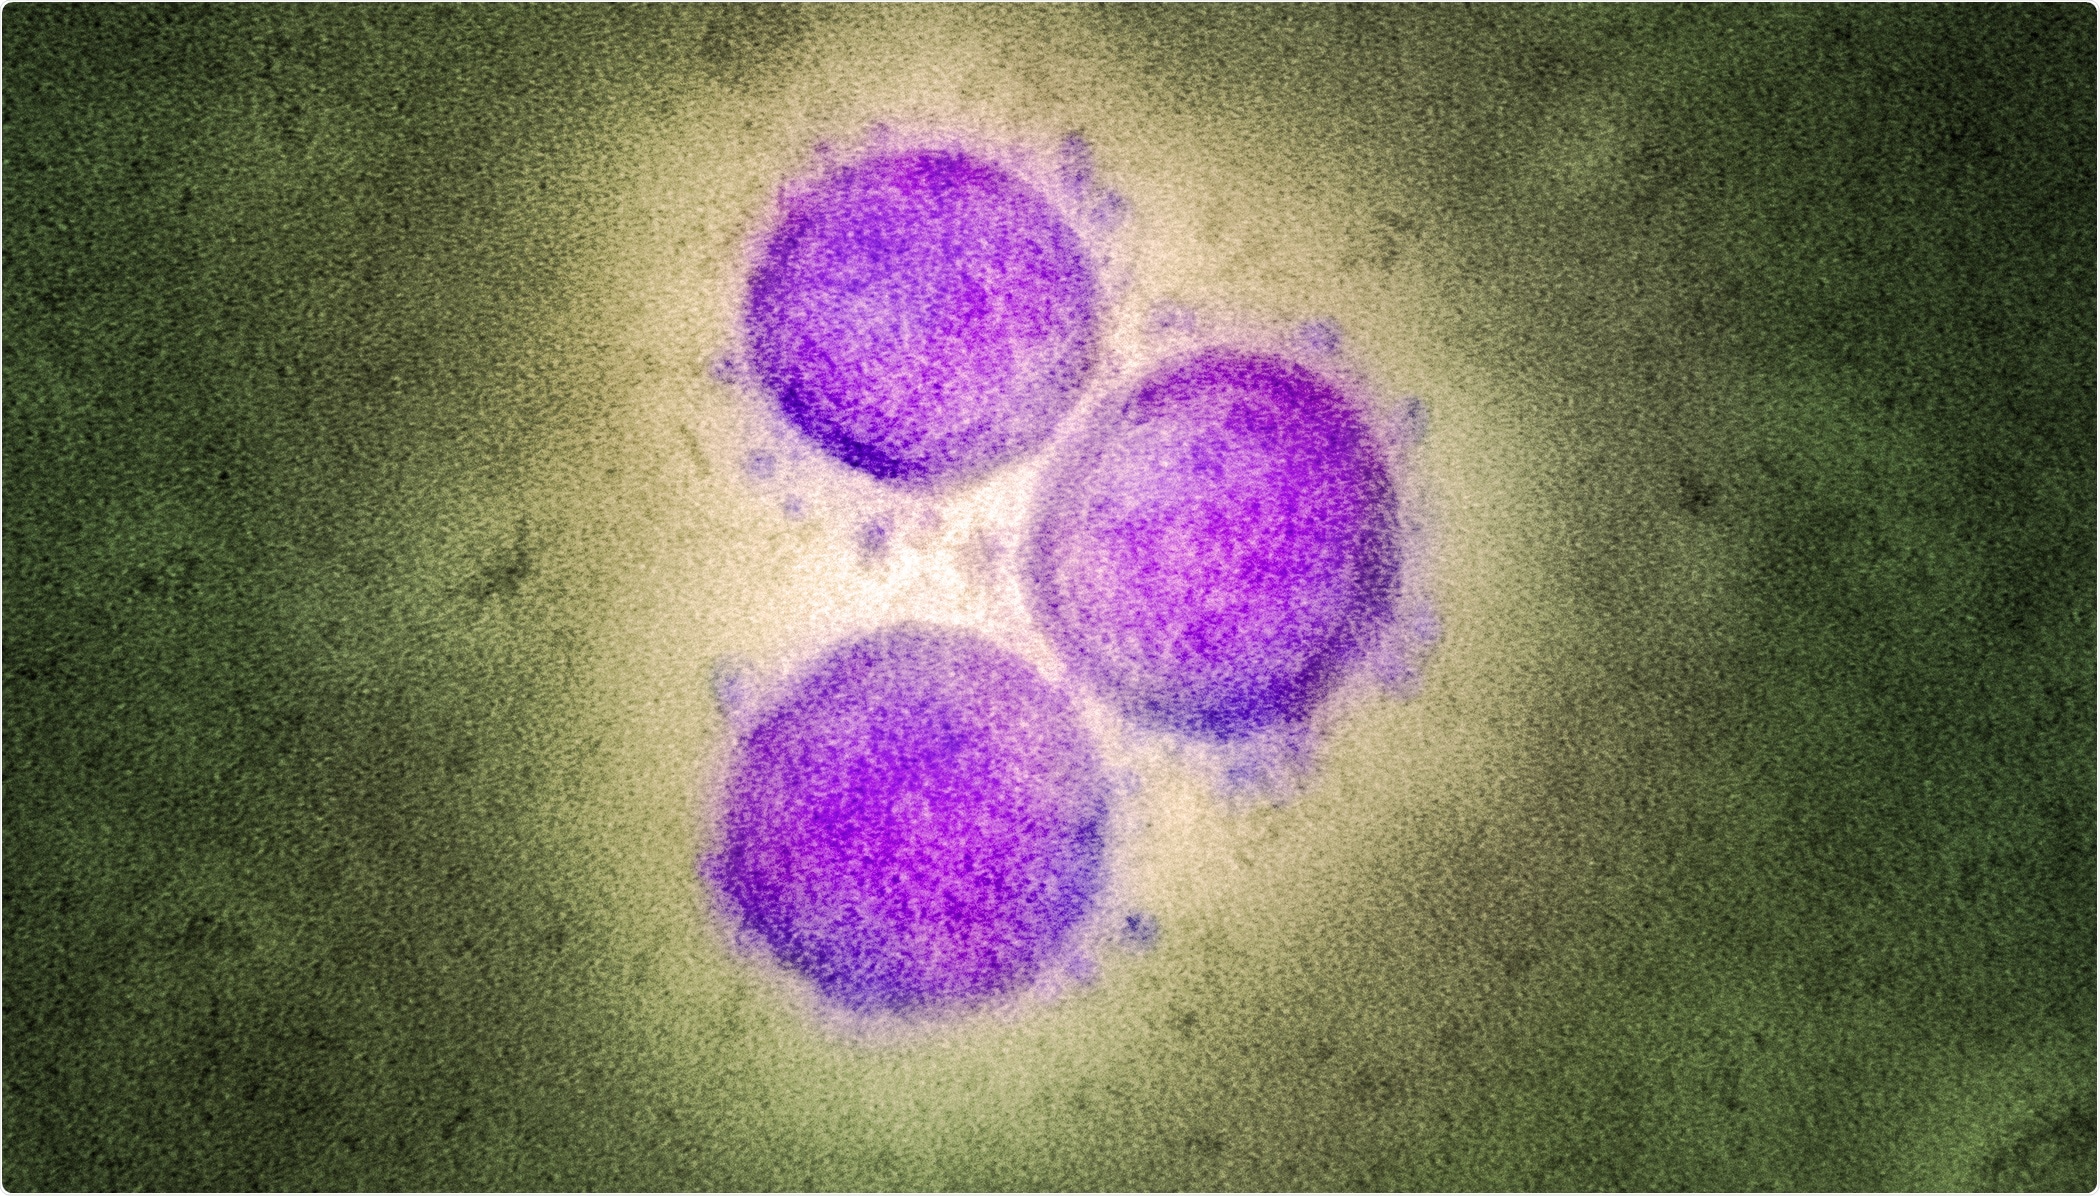 Estudio: El aumento con dependencia de los anticuerpos de la infección SARS-CoV-2 es mediado por los receptores FcγRIIA y FcγRIIIA de IgG pero no contribuye a la producción aberrante del Cytokine por los macrófagos. Haber de imagen: NIAID